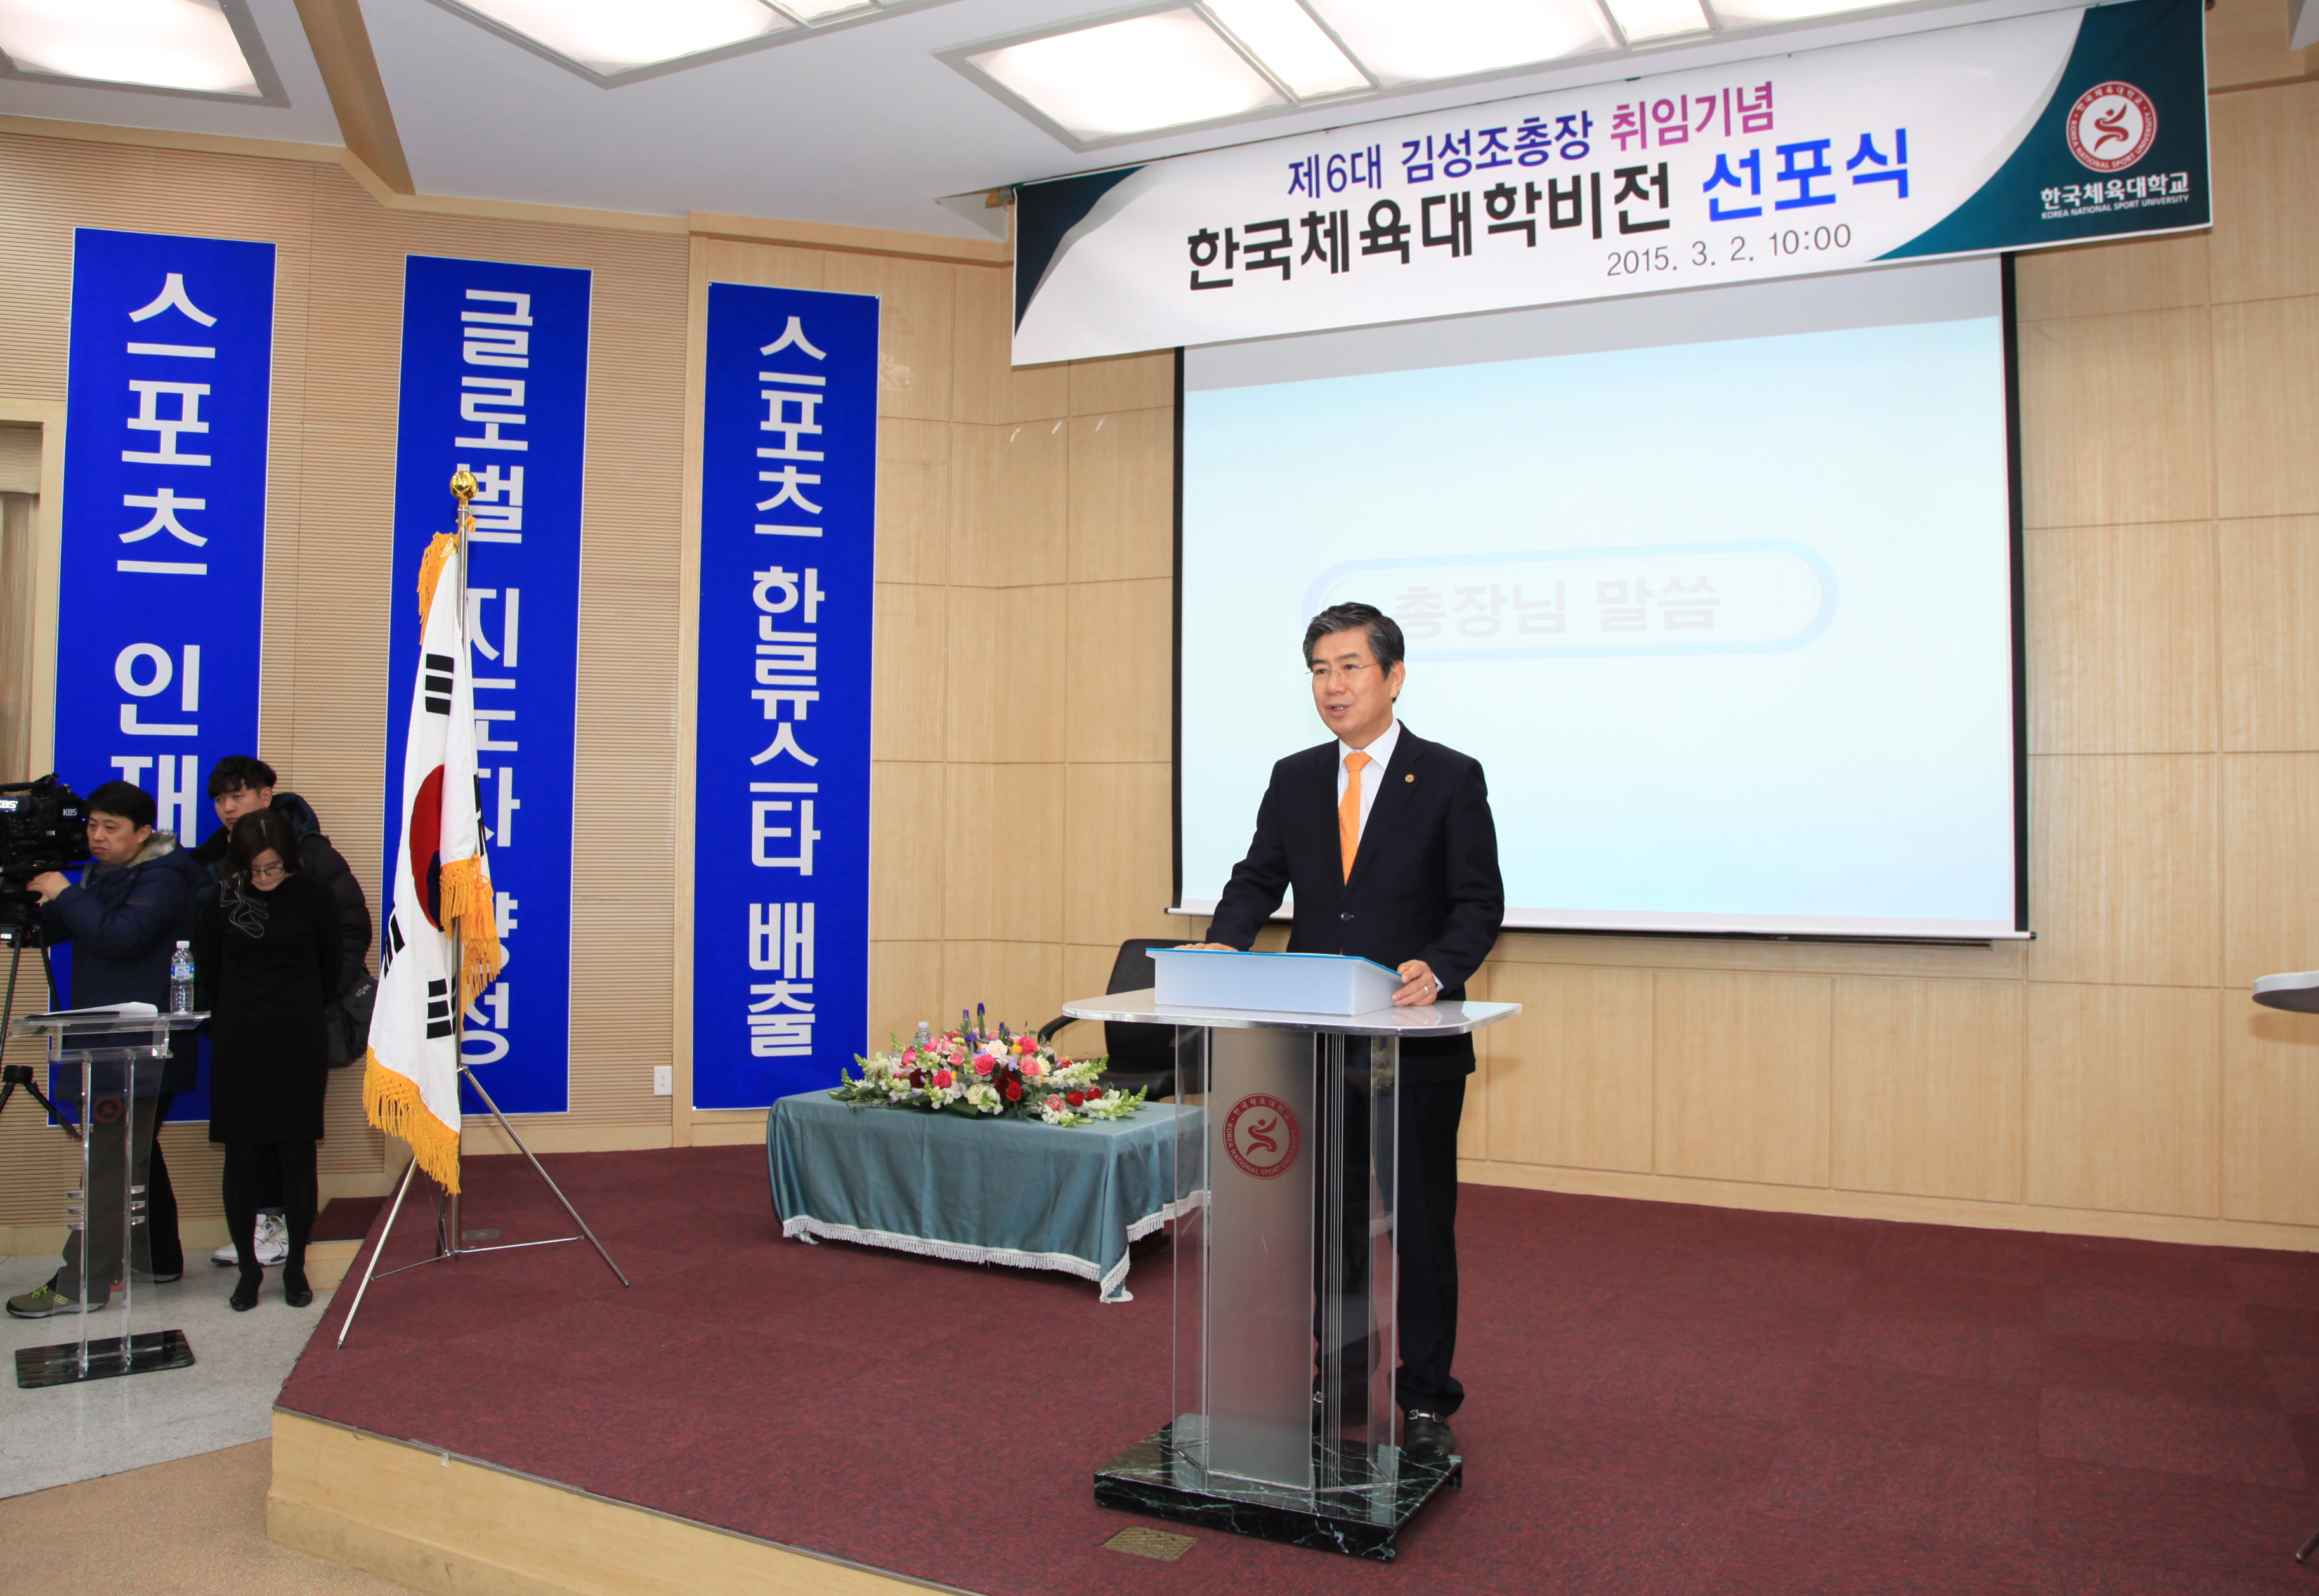 제6대 김성조총장 취임기념 비전선포식(2015.3.2)